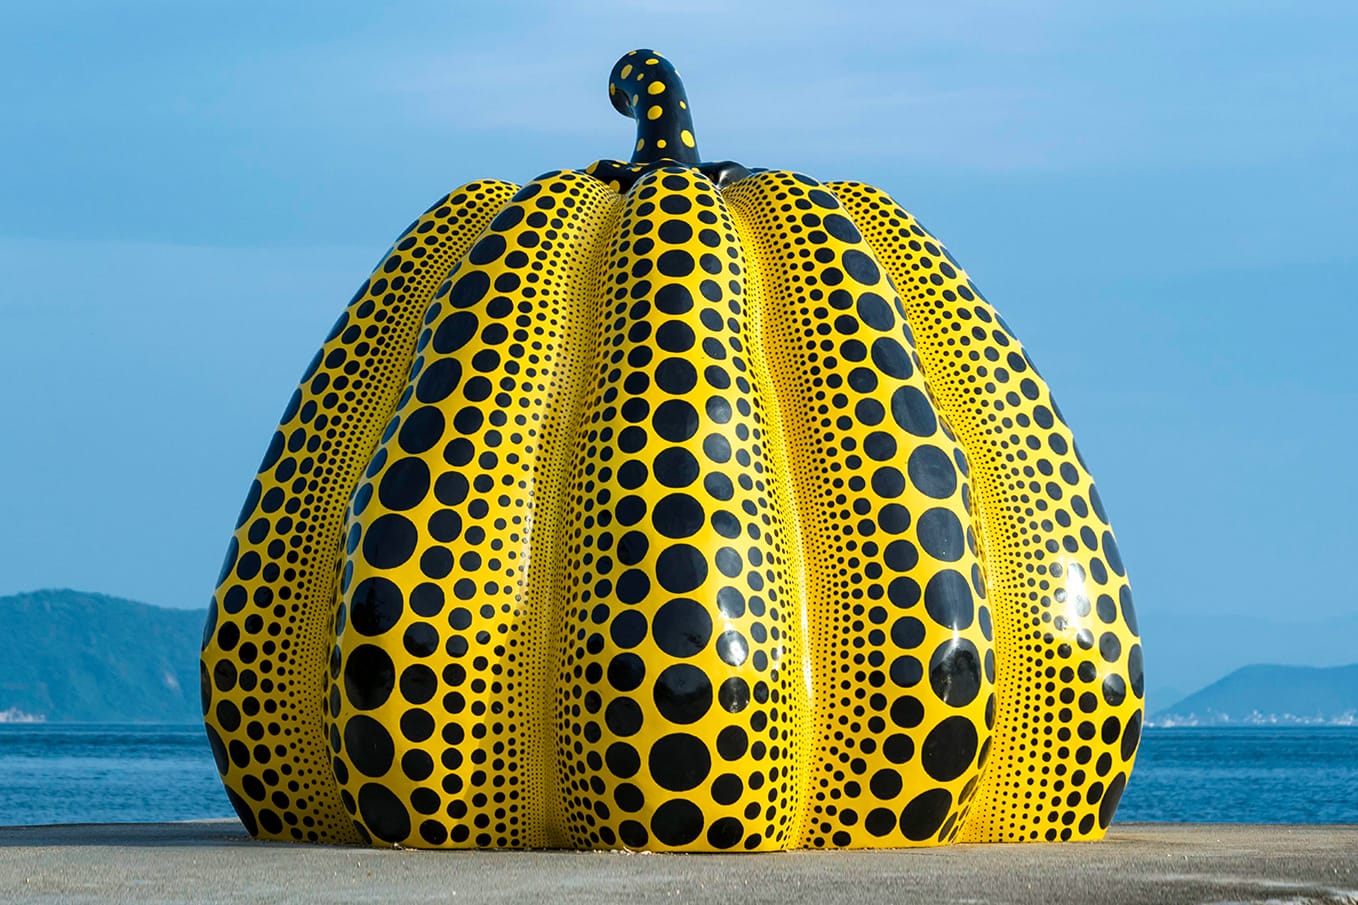 MoMA Yayoi Kusama Pumpkin Yellow Objet Object Art work from Japan 